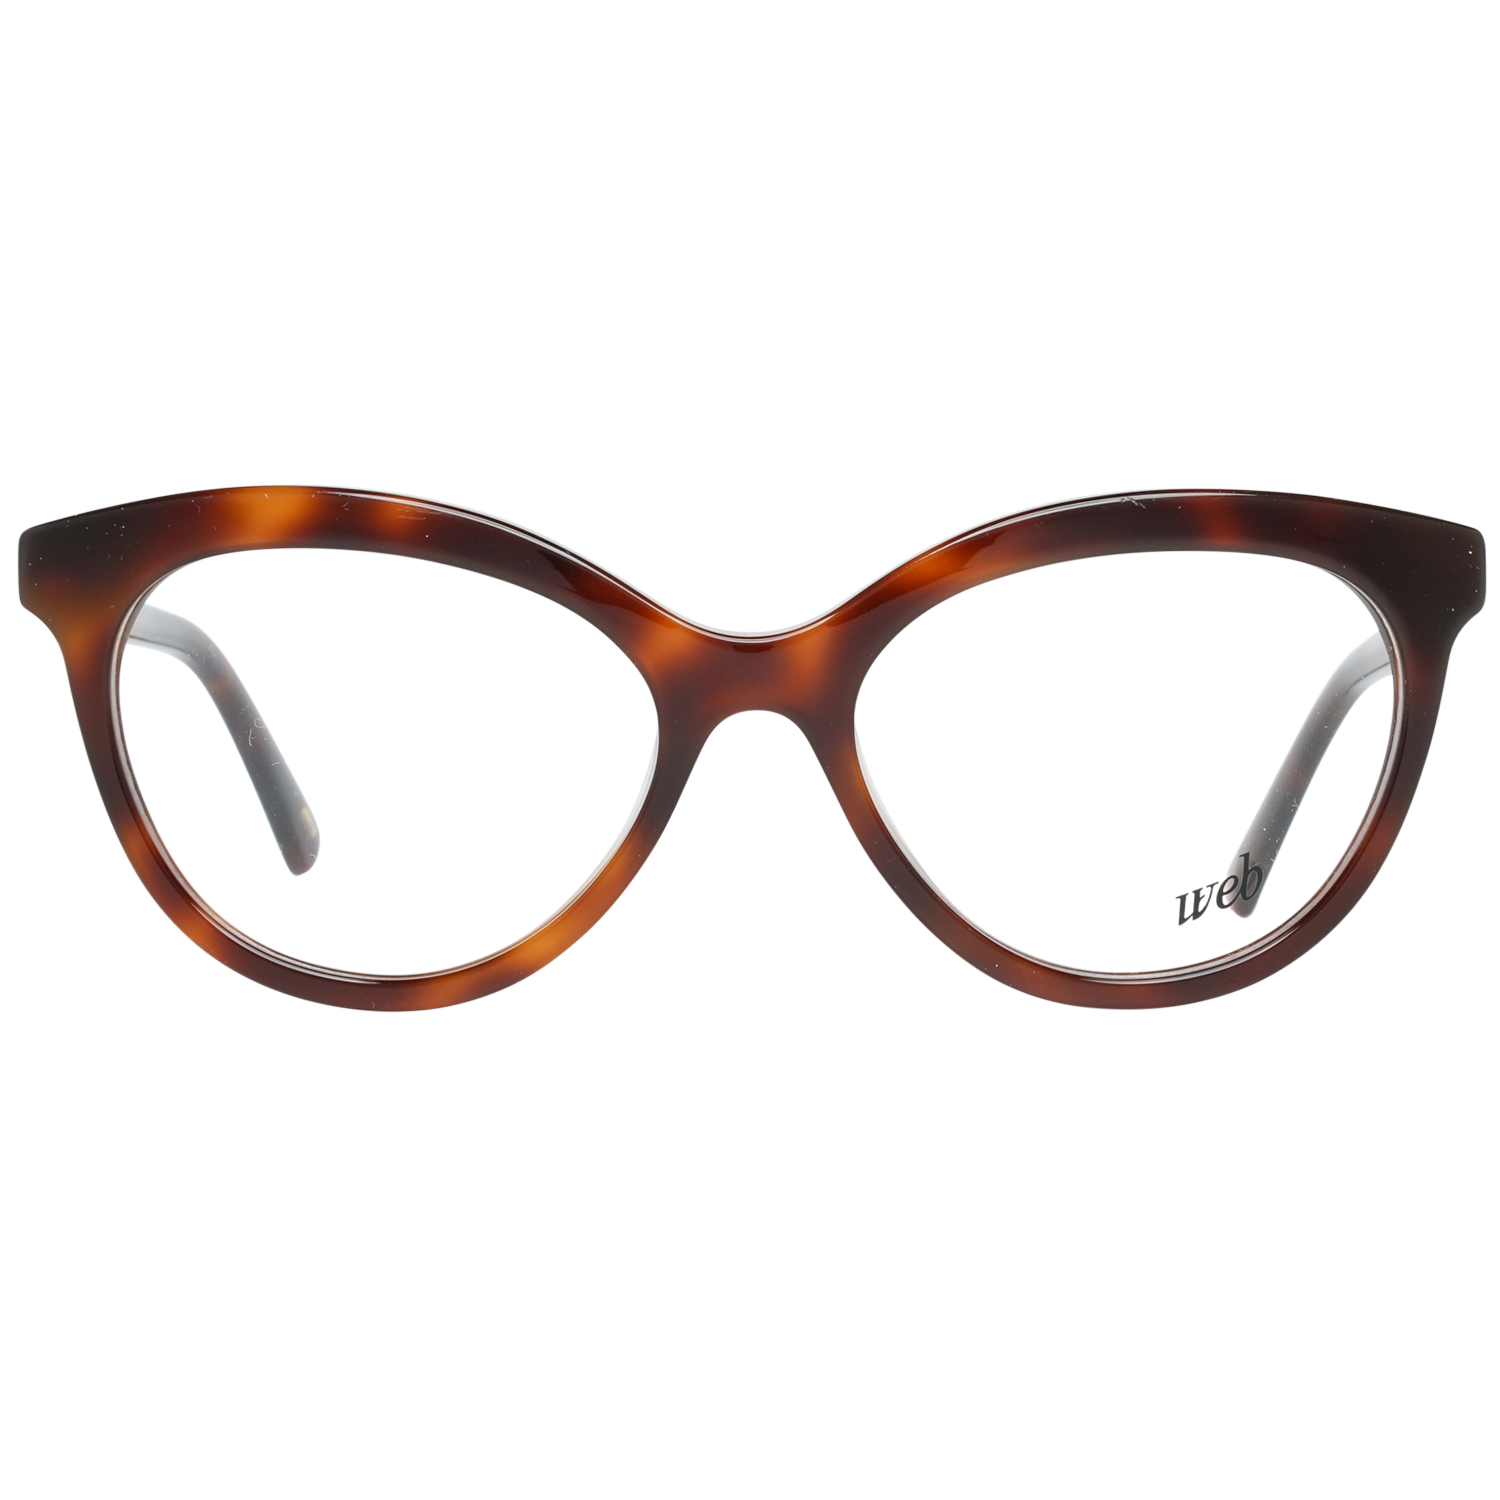 Web Frames Web Optical Frame WE5250 052 51 Eyeglasses Eyewear UK USA Australia 